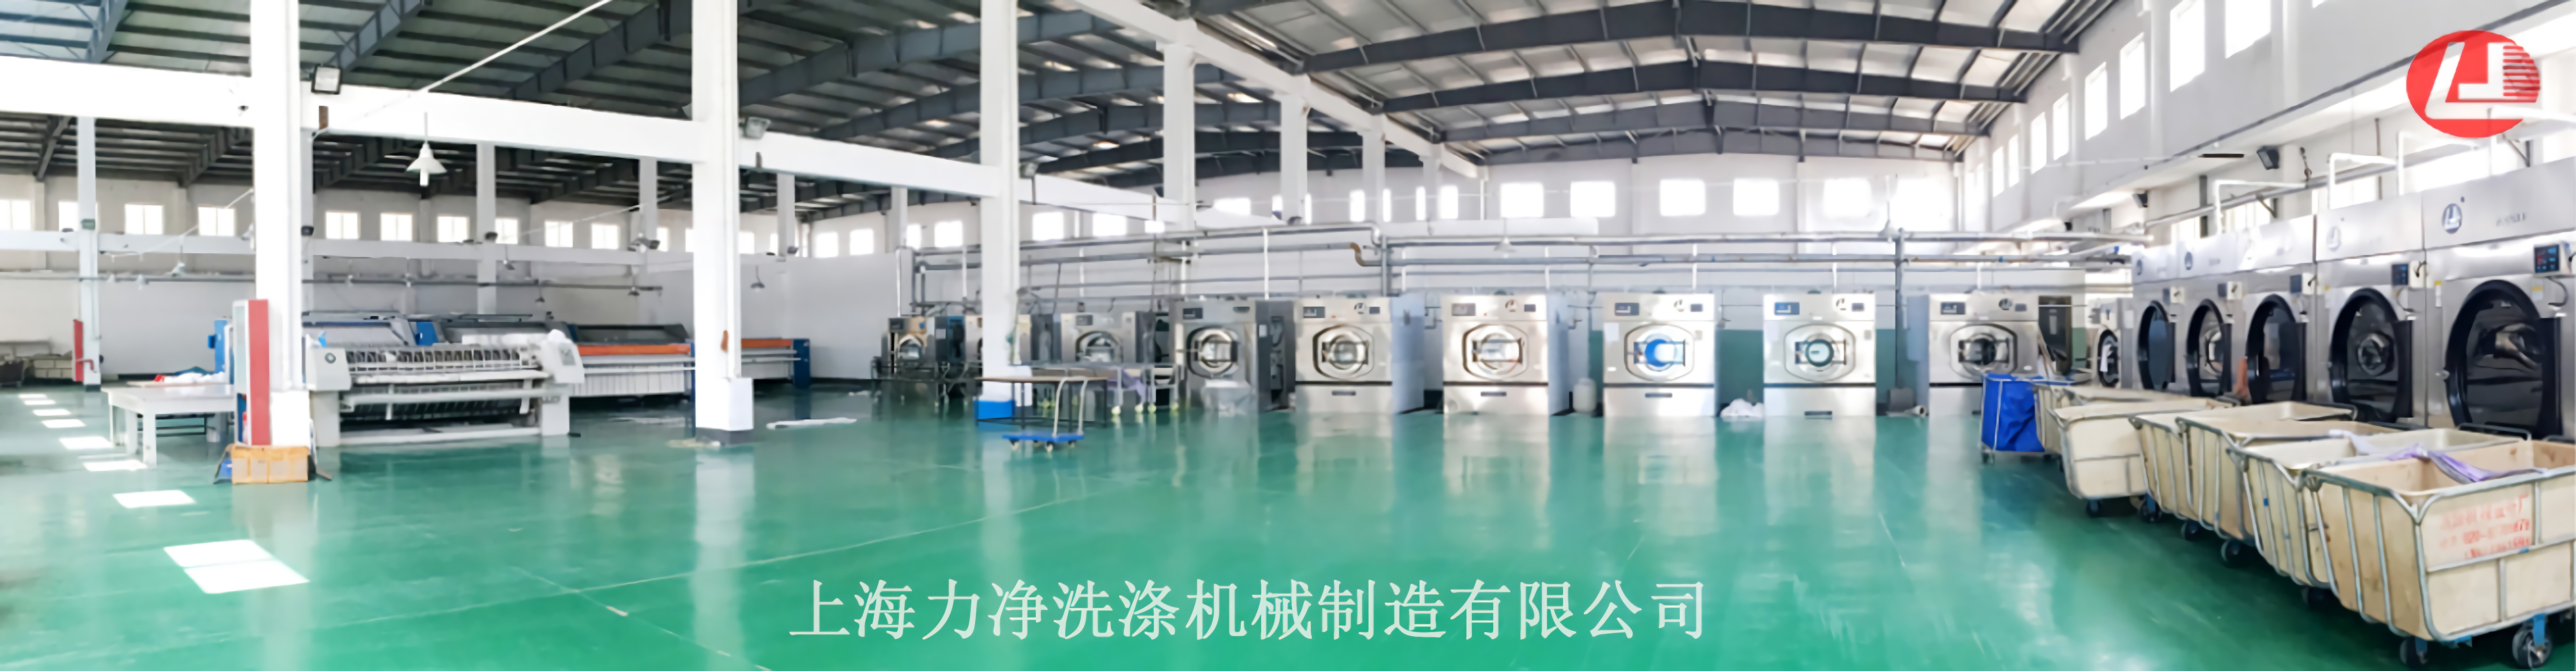 上海力净水洗设备